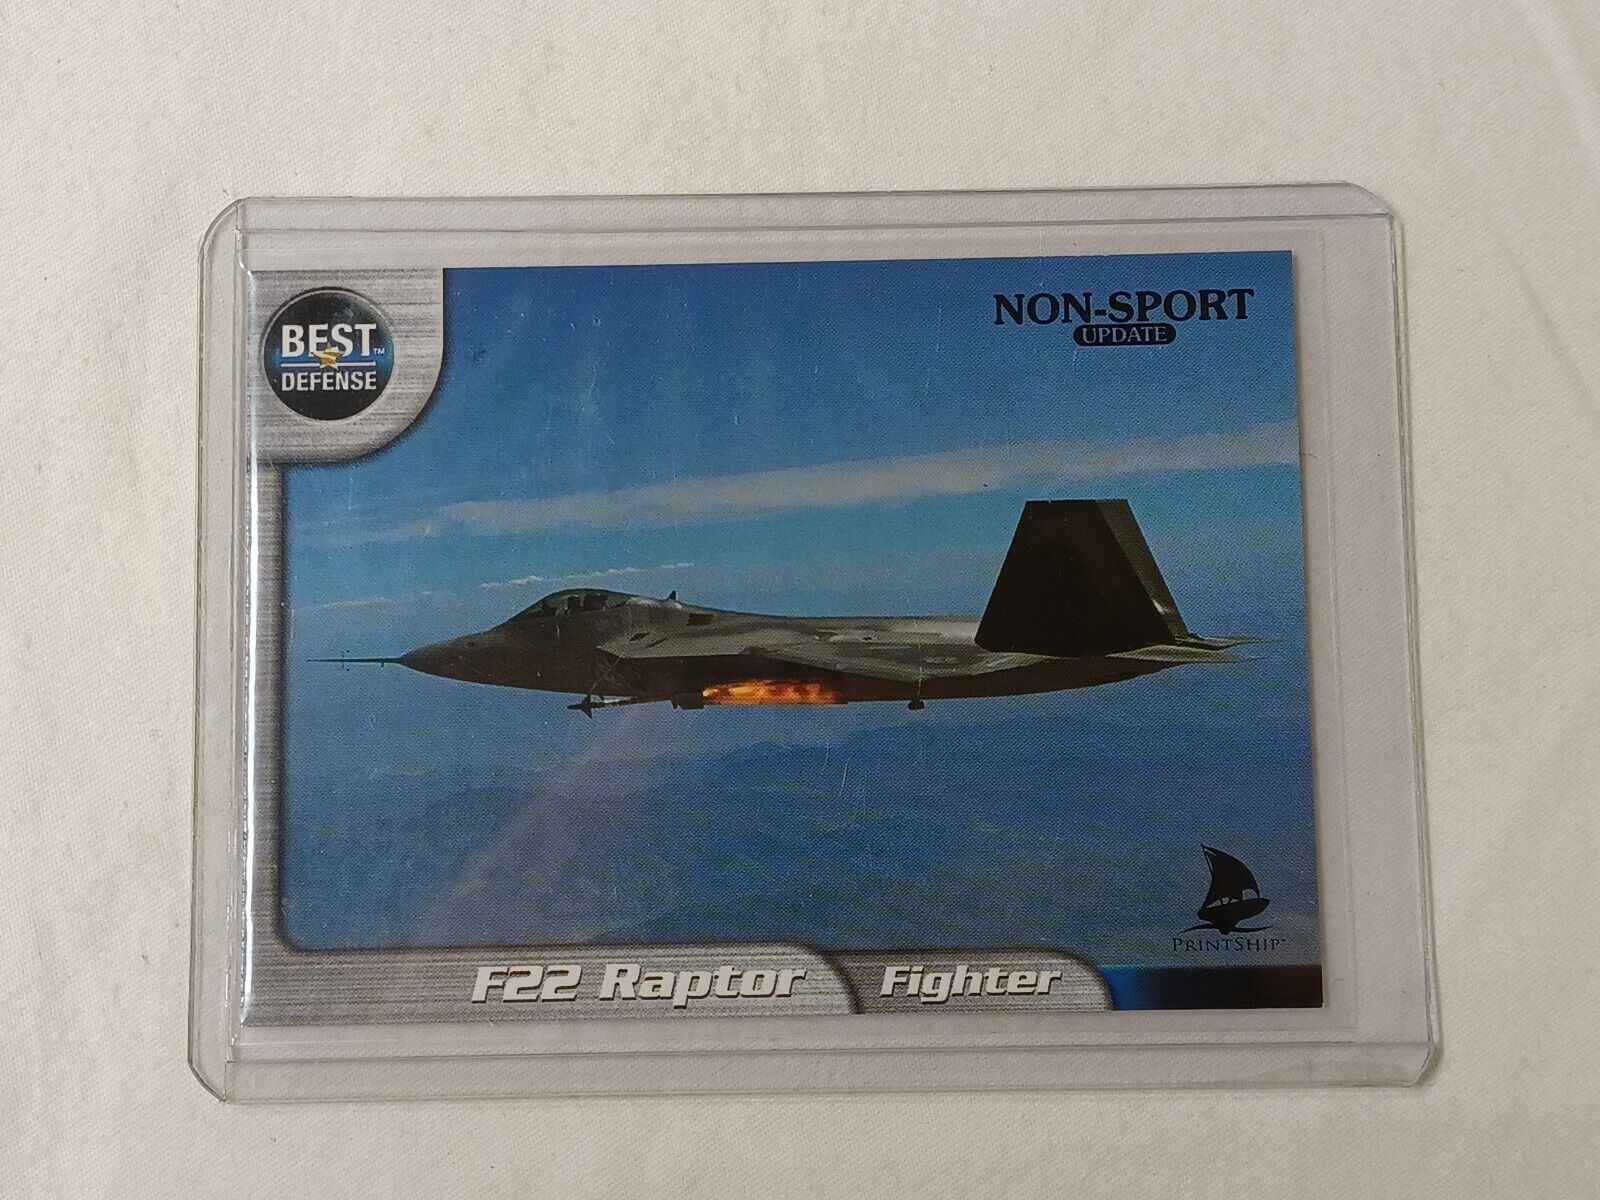 Best Defense F22 Raptor Fighter Promo Card 1 of 4 PrintShip 2001 